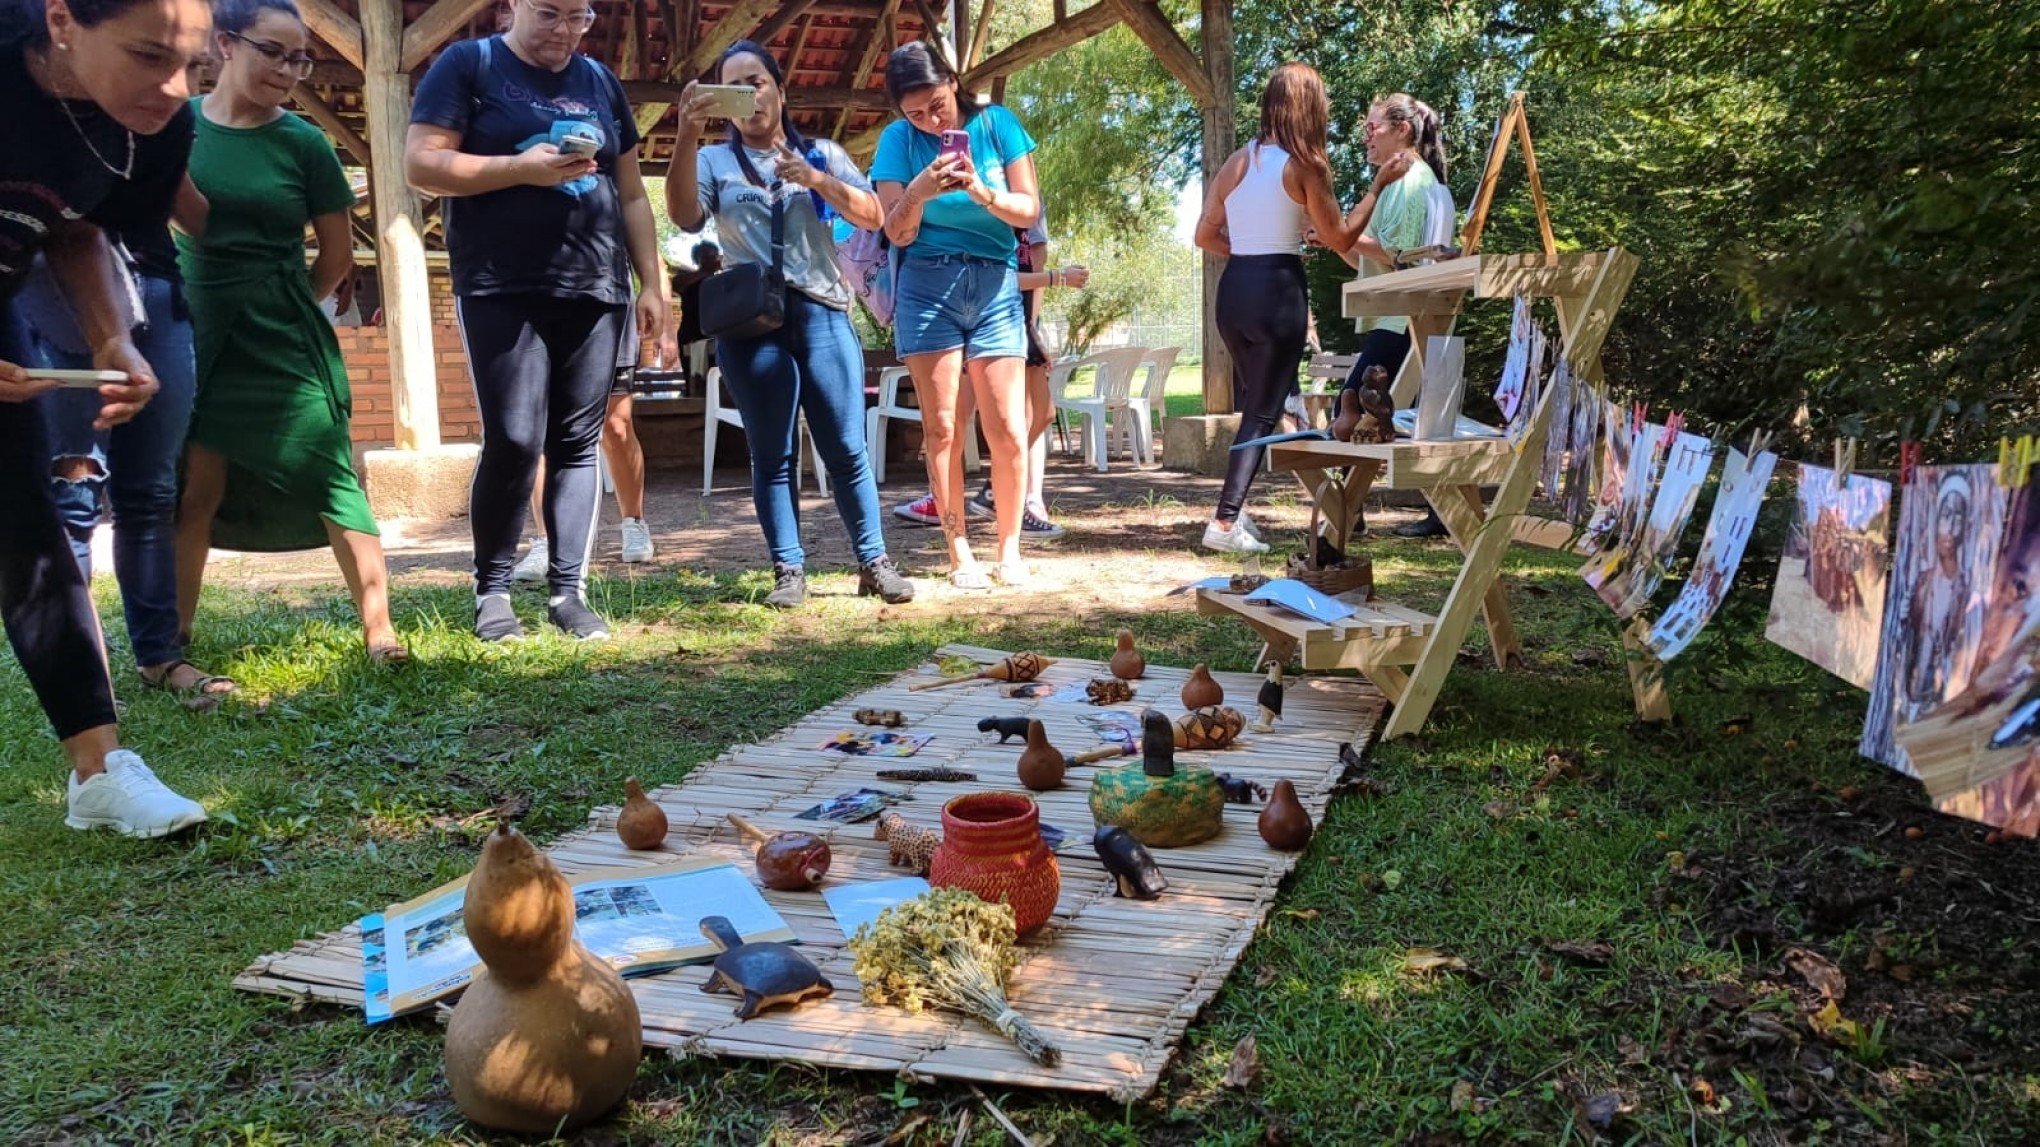 Cultura IndÃ­gena em foco: professores leopoldenses participam de formaÃ§Ã£o com os povos indÃ­genas Kaingang (SÃ£o Leopoldo) e Mbya-Guarani (Eldorado do Sul) no Parque Imperatriz